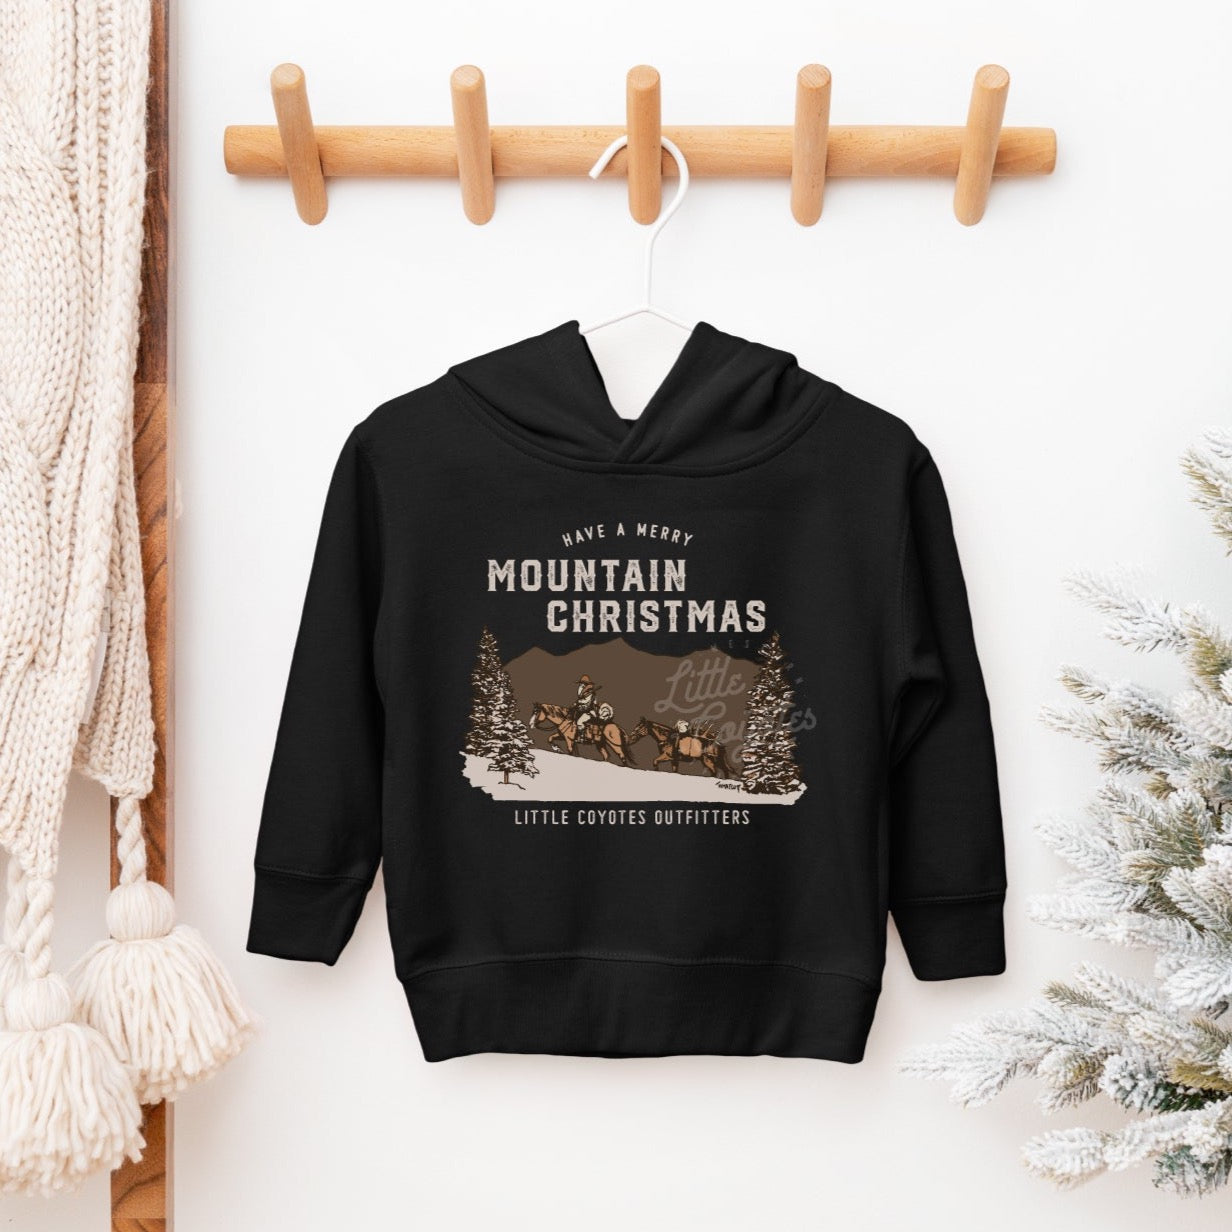 Pre-Order “Mountain Christmas” Kids Hooded Sweatshirt in Black